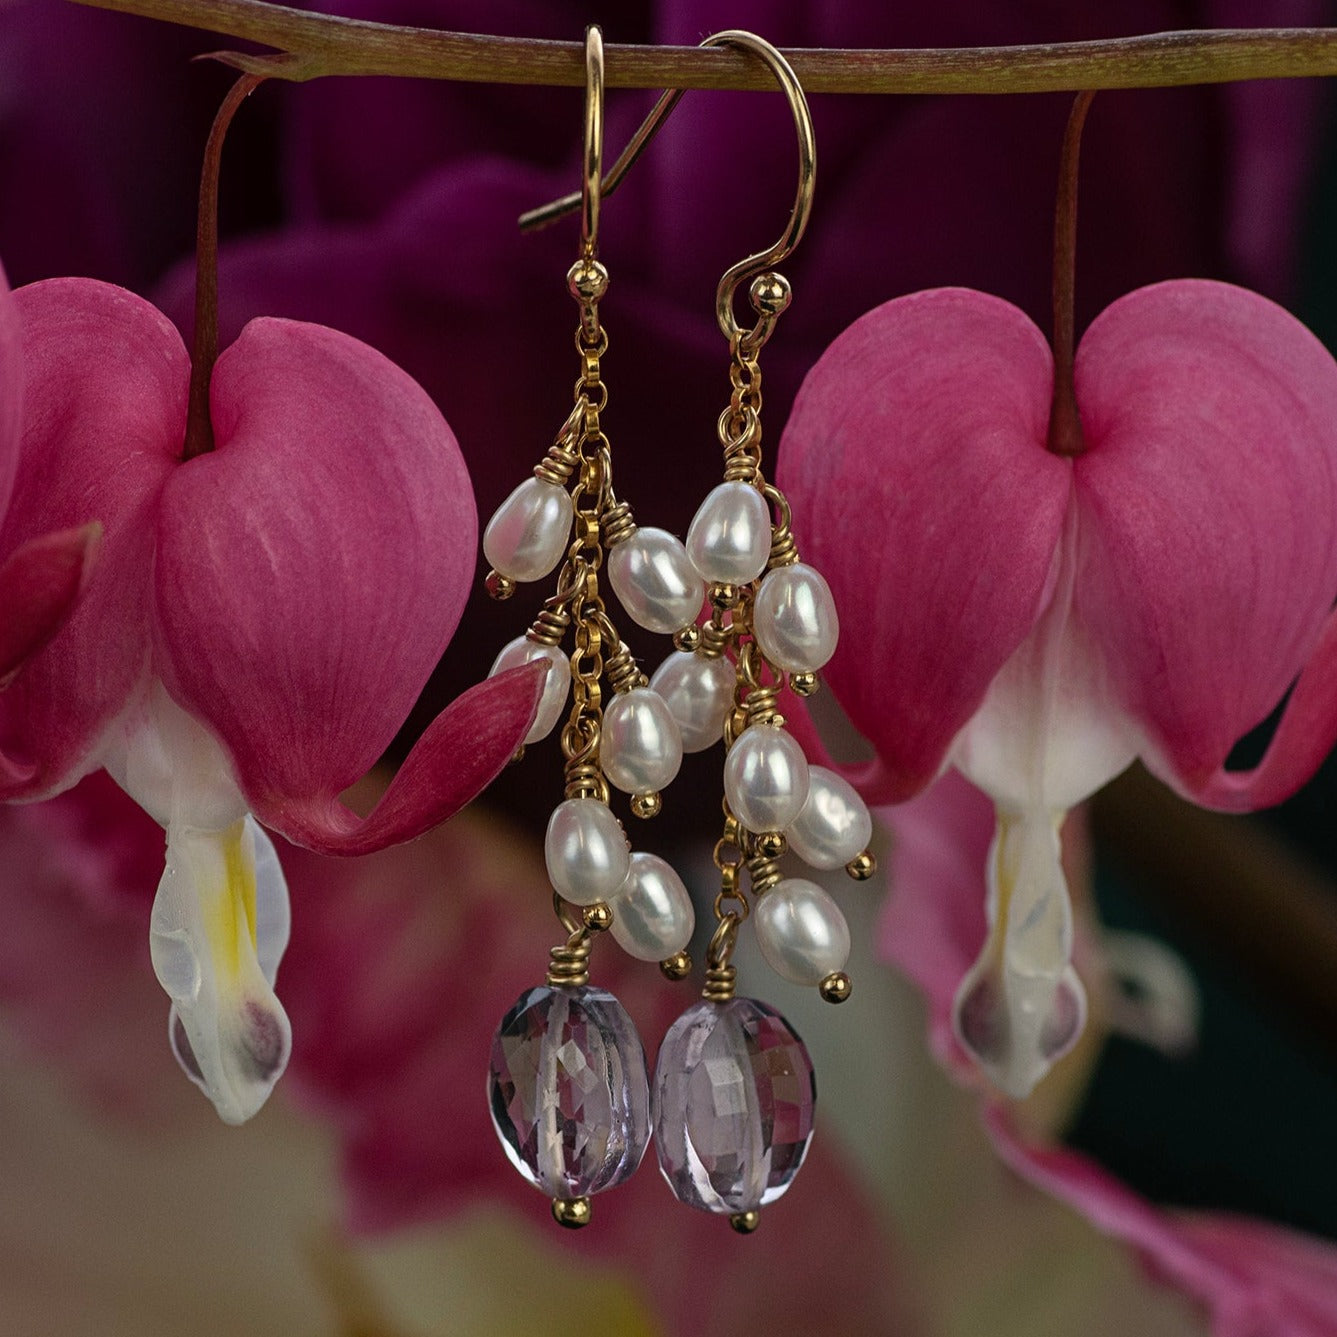 Amethyst & Pearl Cluster Earrings - Bridgerton Inspired - Kate